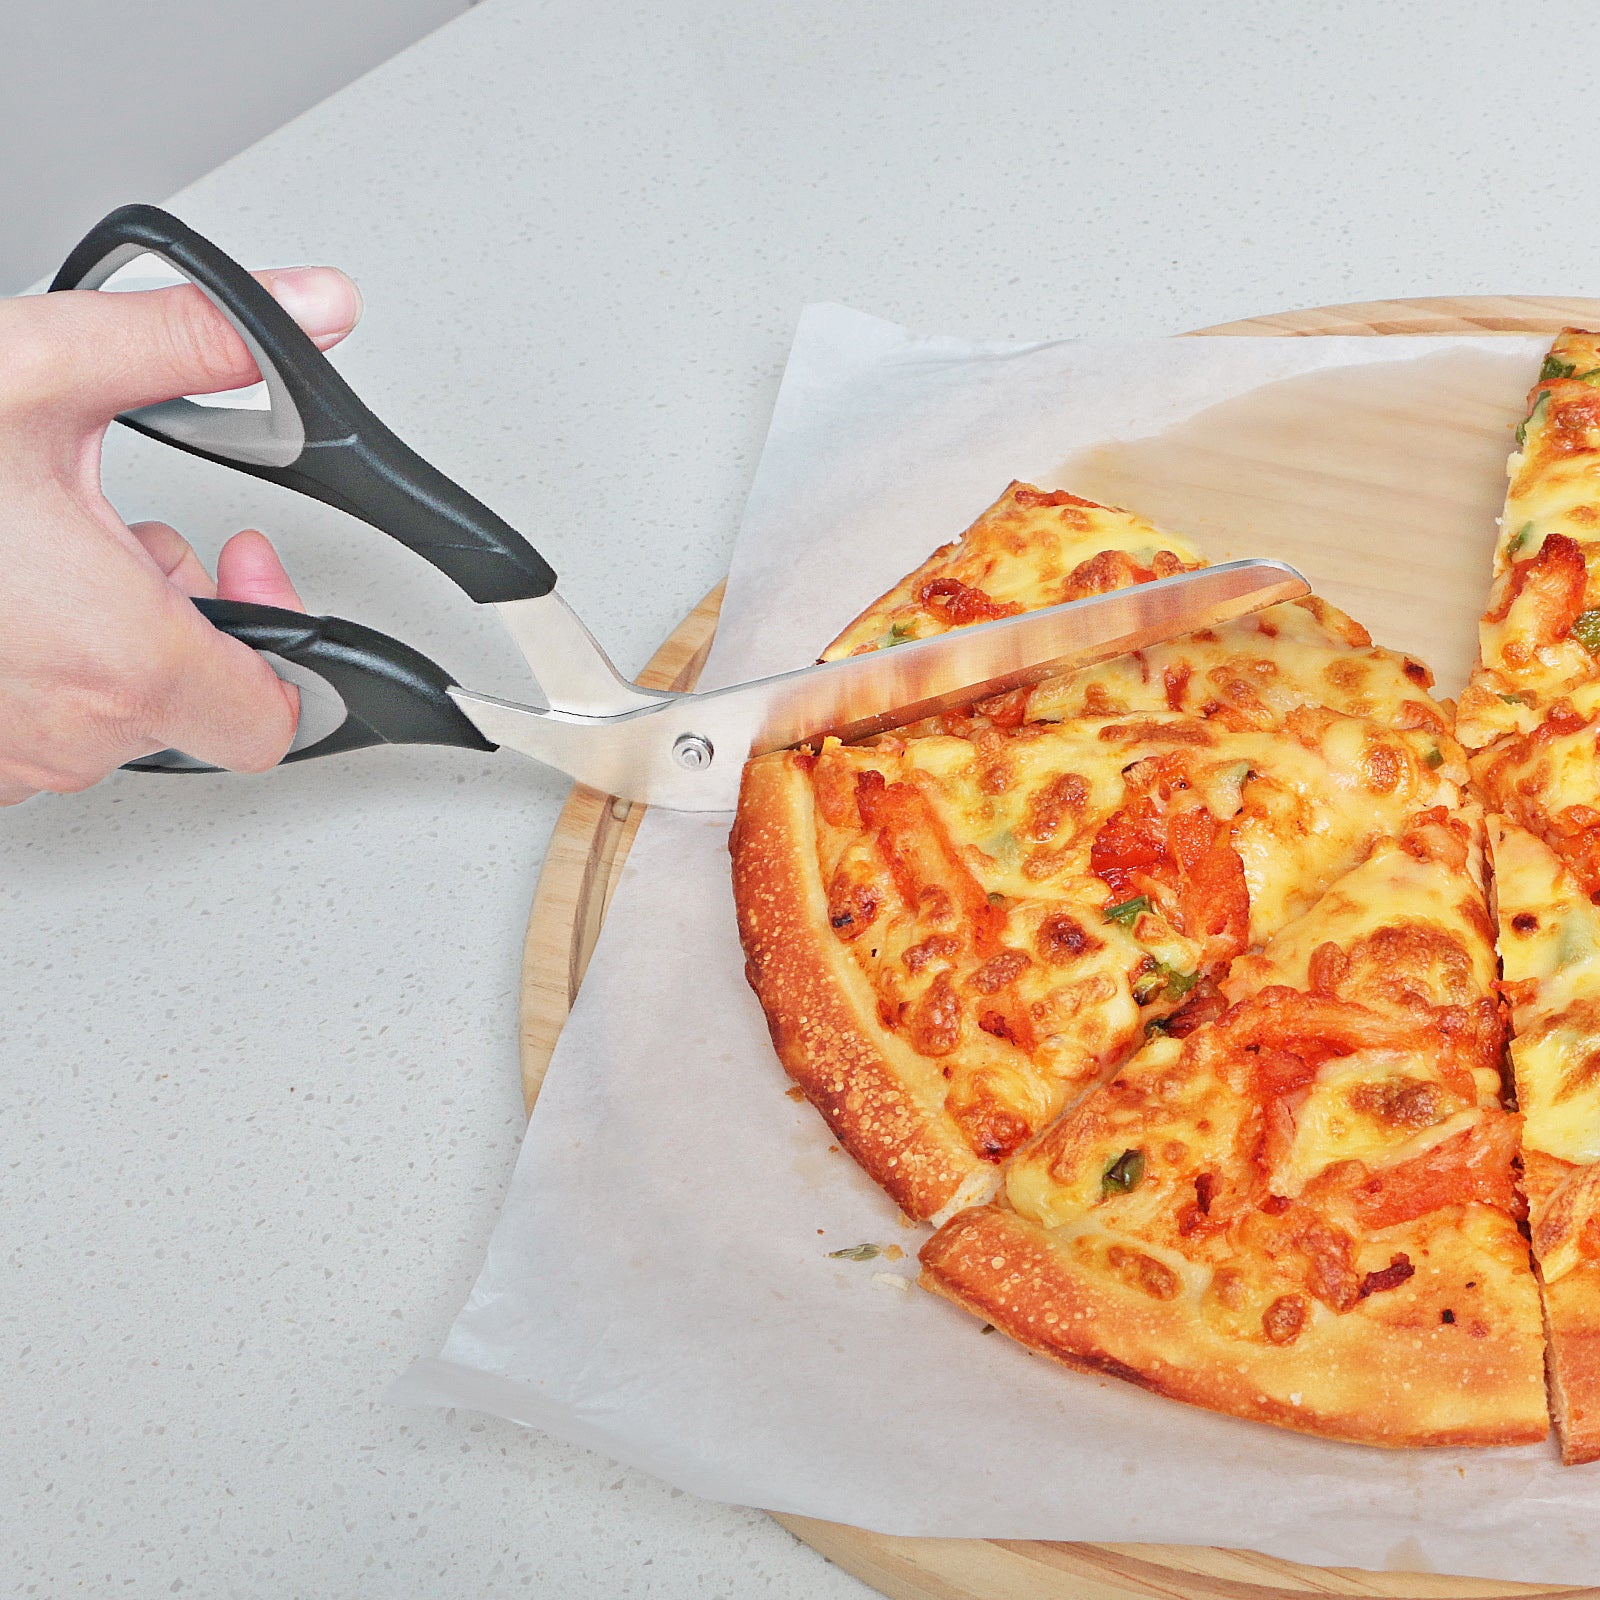 Asdirne Pizza Scissors, Pizza Cutter